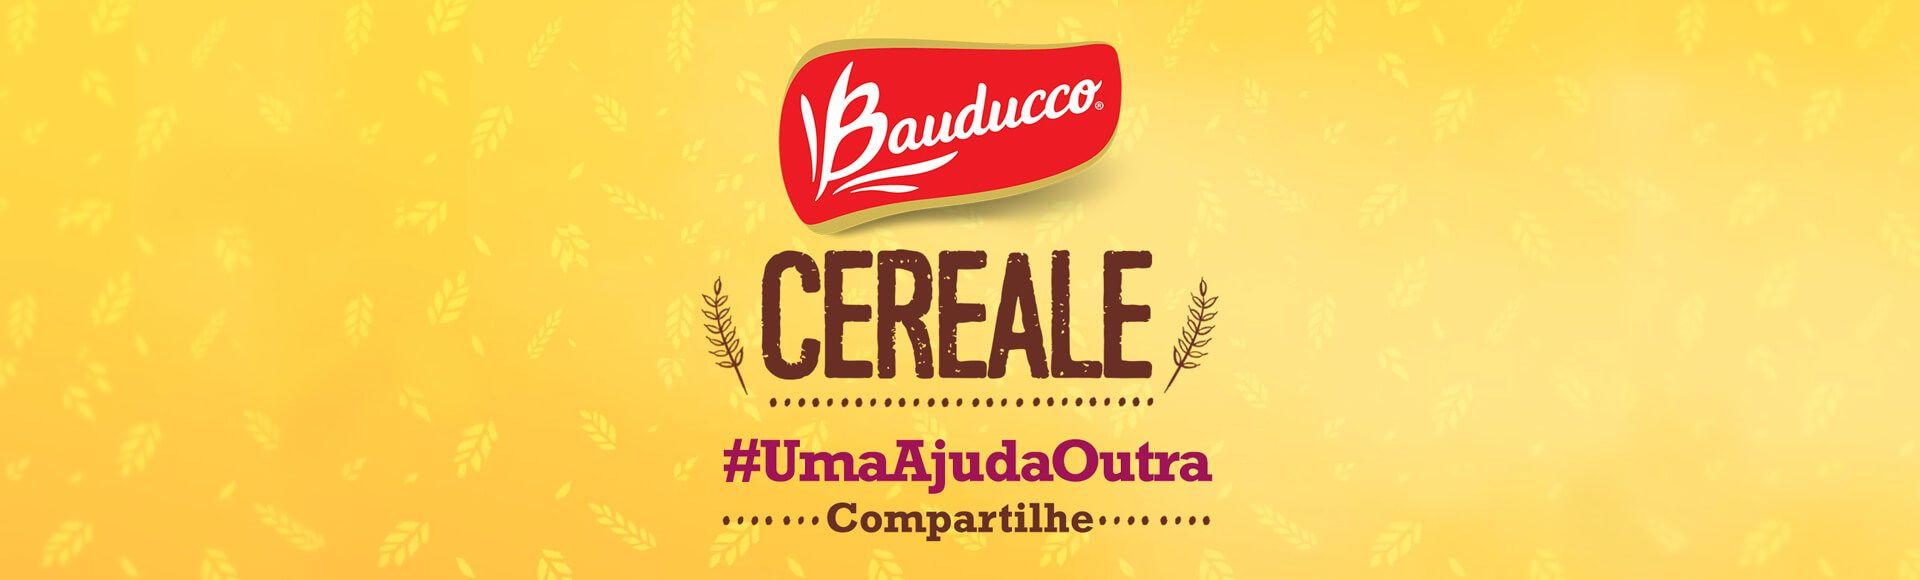 Bauducco Logo - cereale_02 - Bauducco